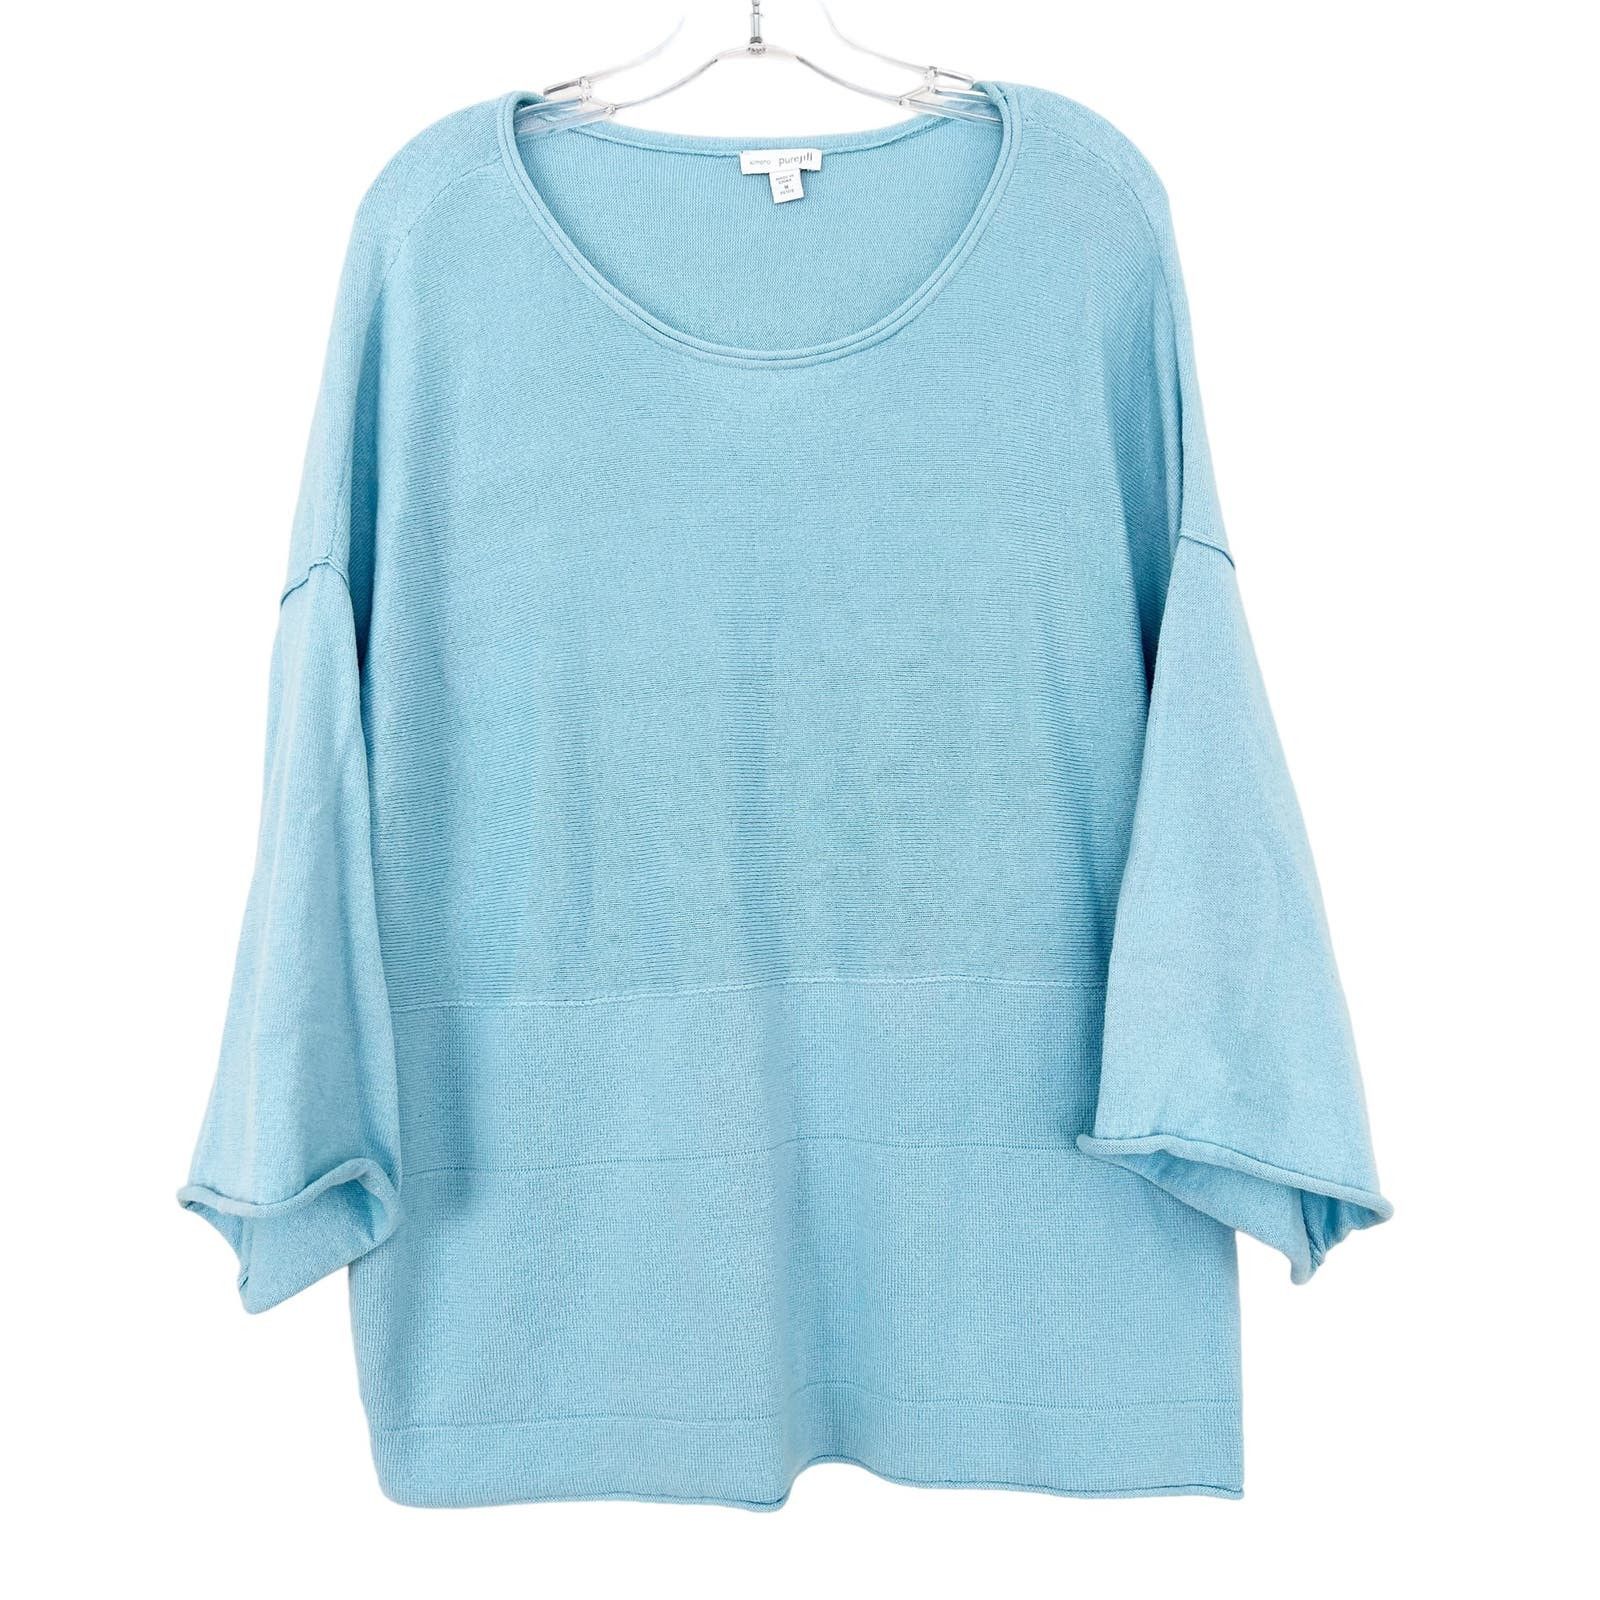 Pure Jill Kimono Blue Sweater Top Womens Small Cotton